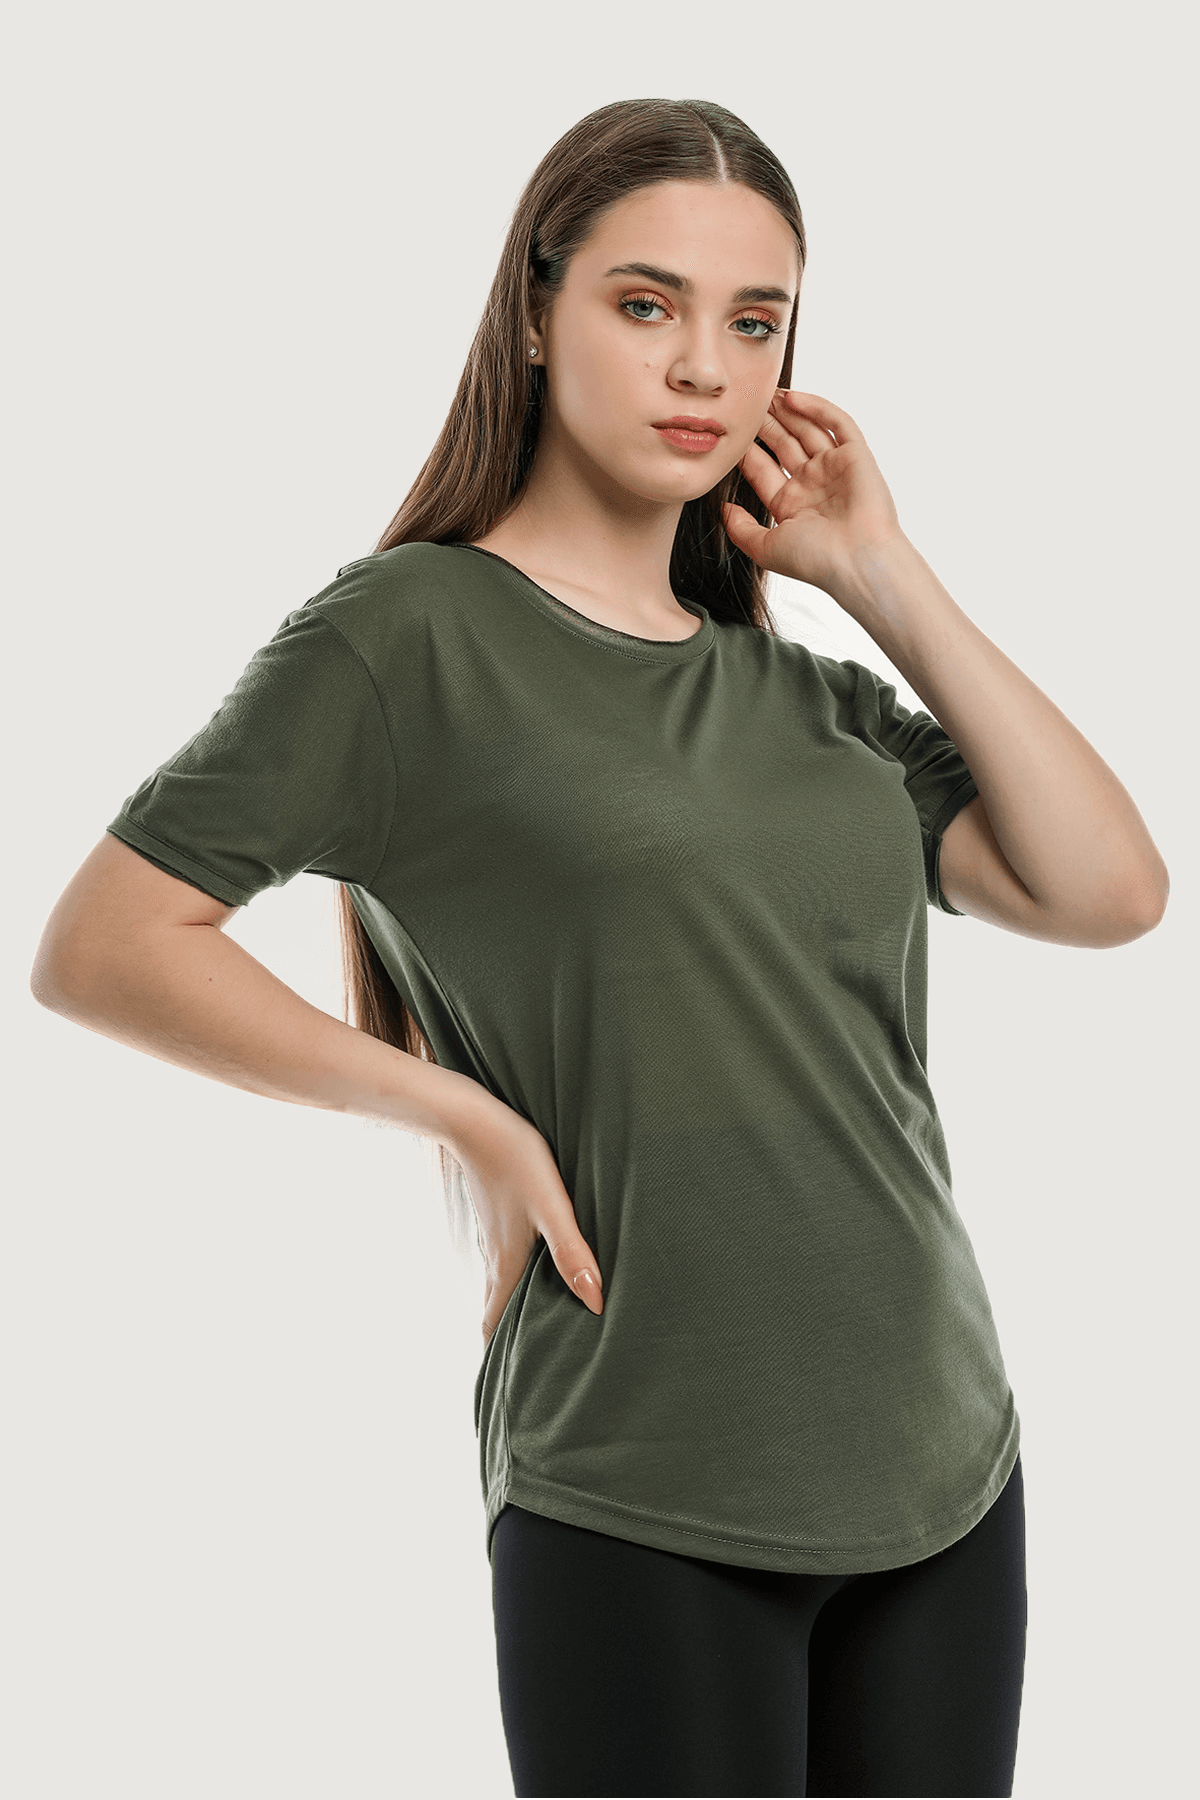 Camiseta básica holgada y cómoda para mujer - Caqui